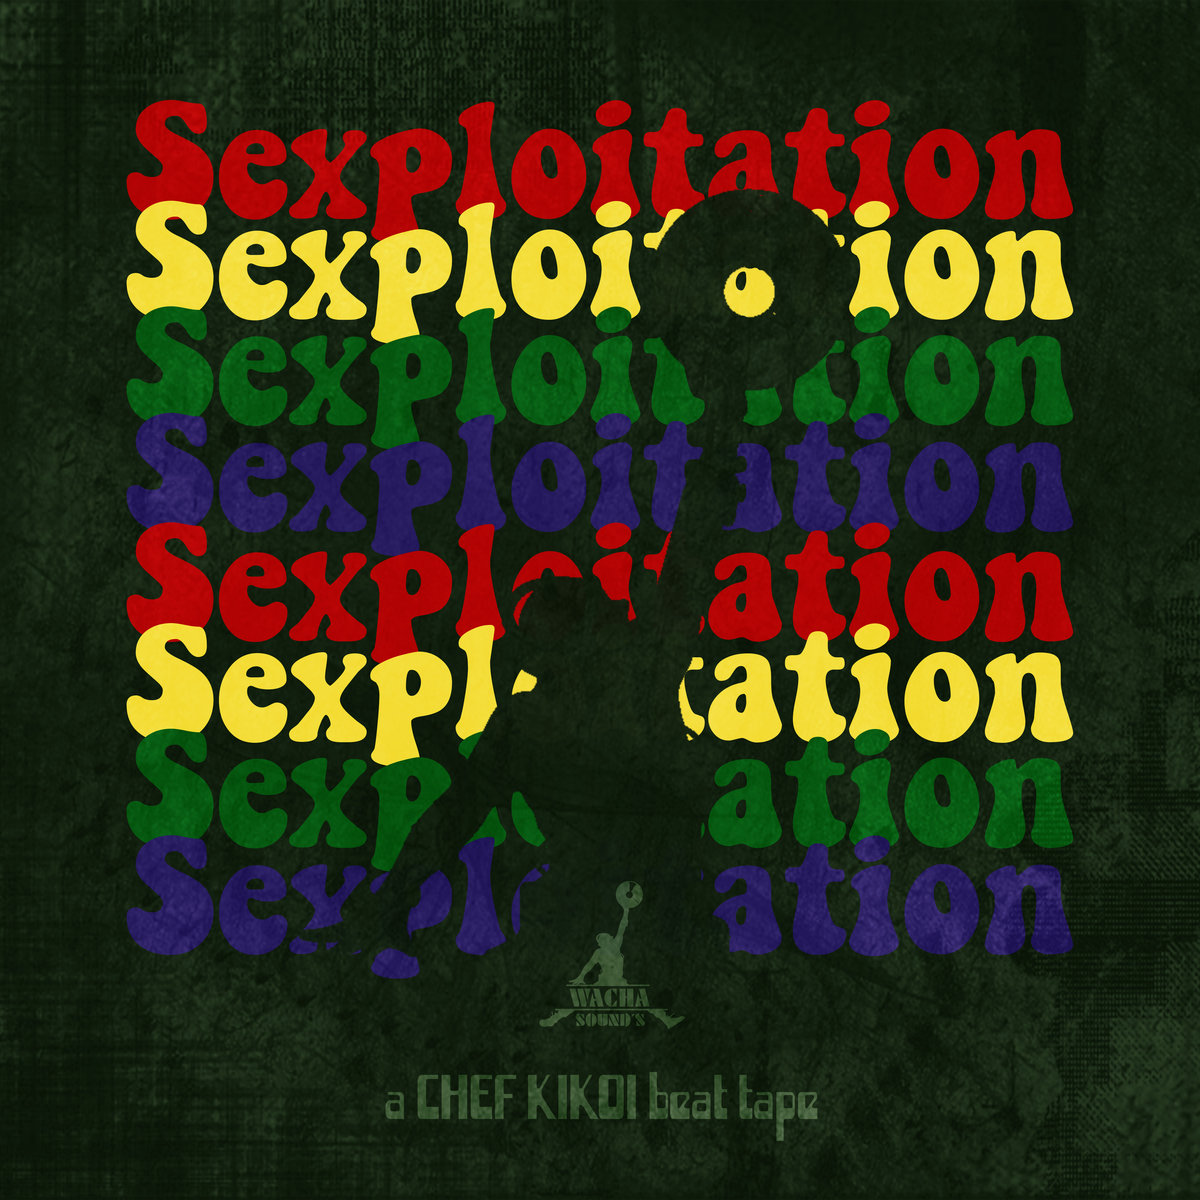 Sexploitation_chef_kikoi